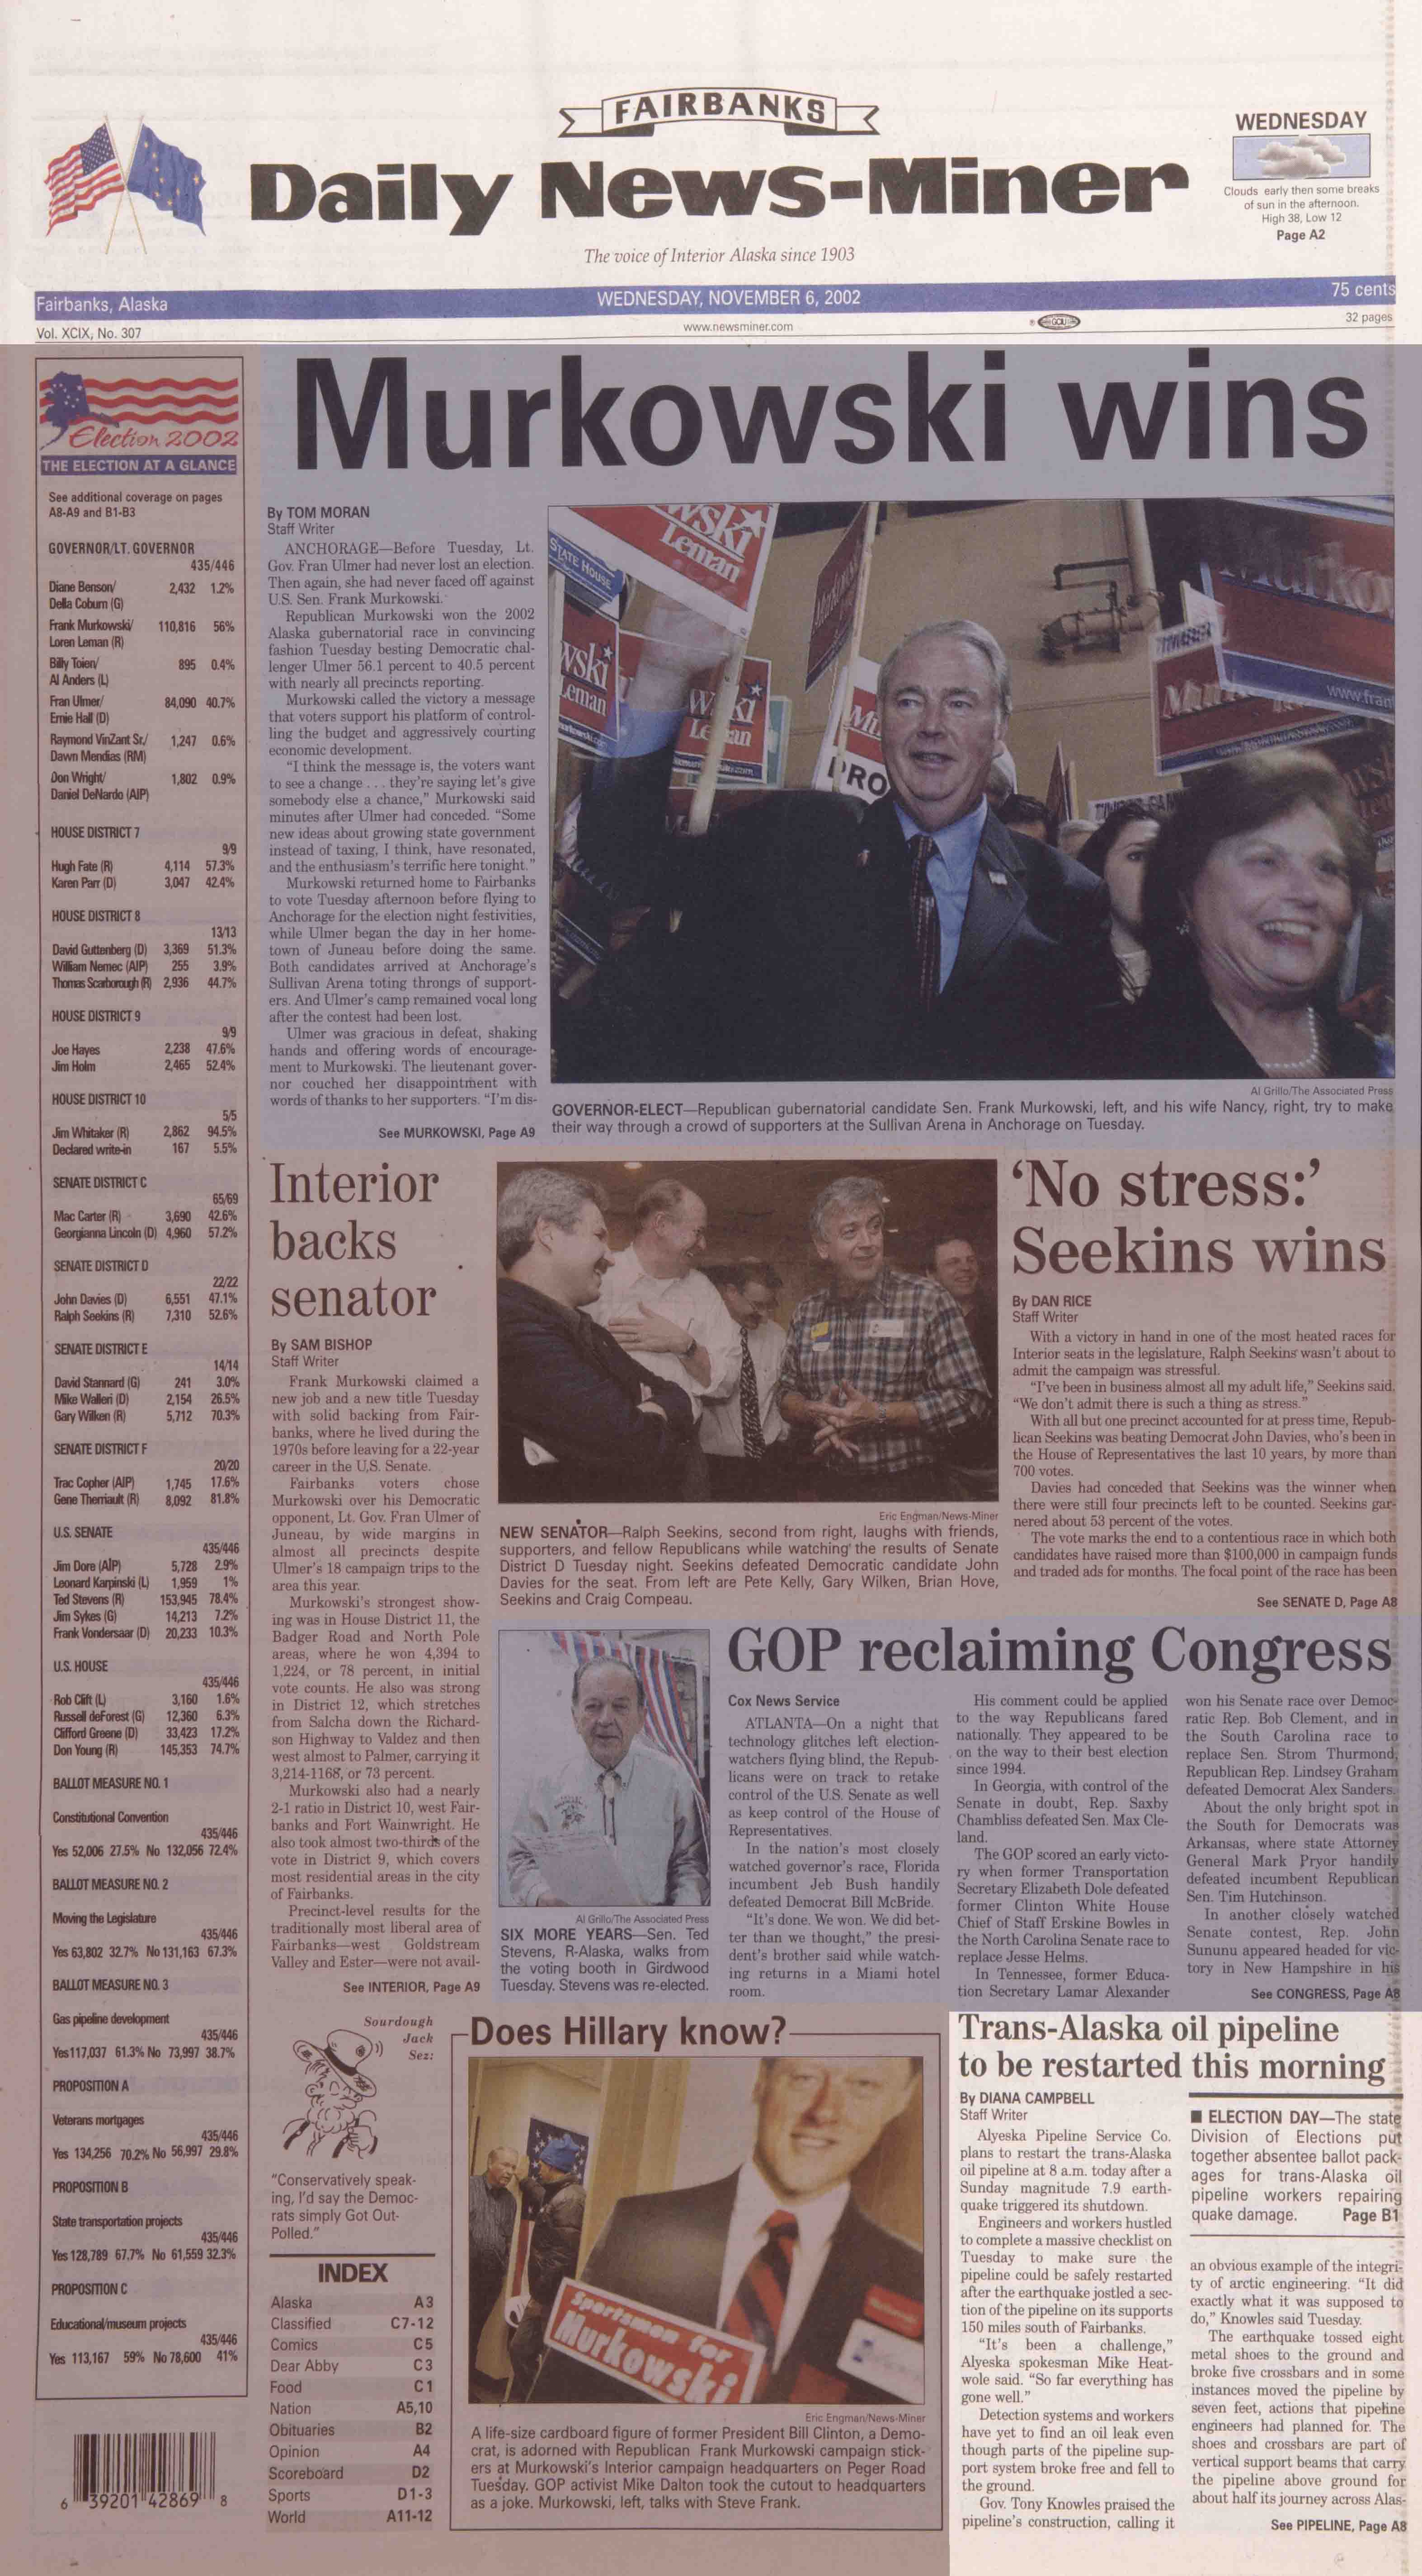 2002 November 6, Fairbanks Daily News-Miner (pg 1)